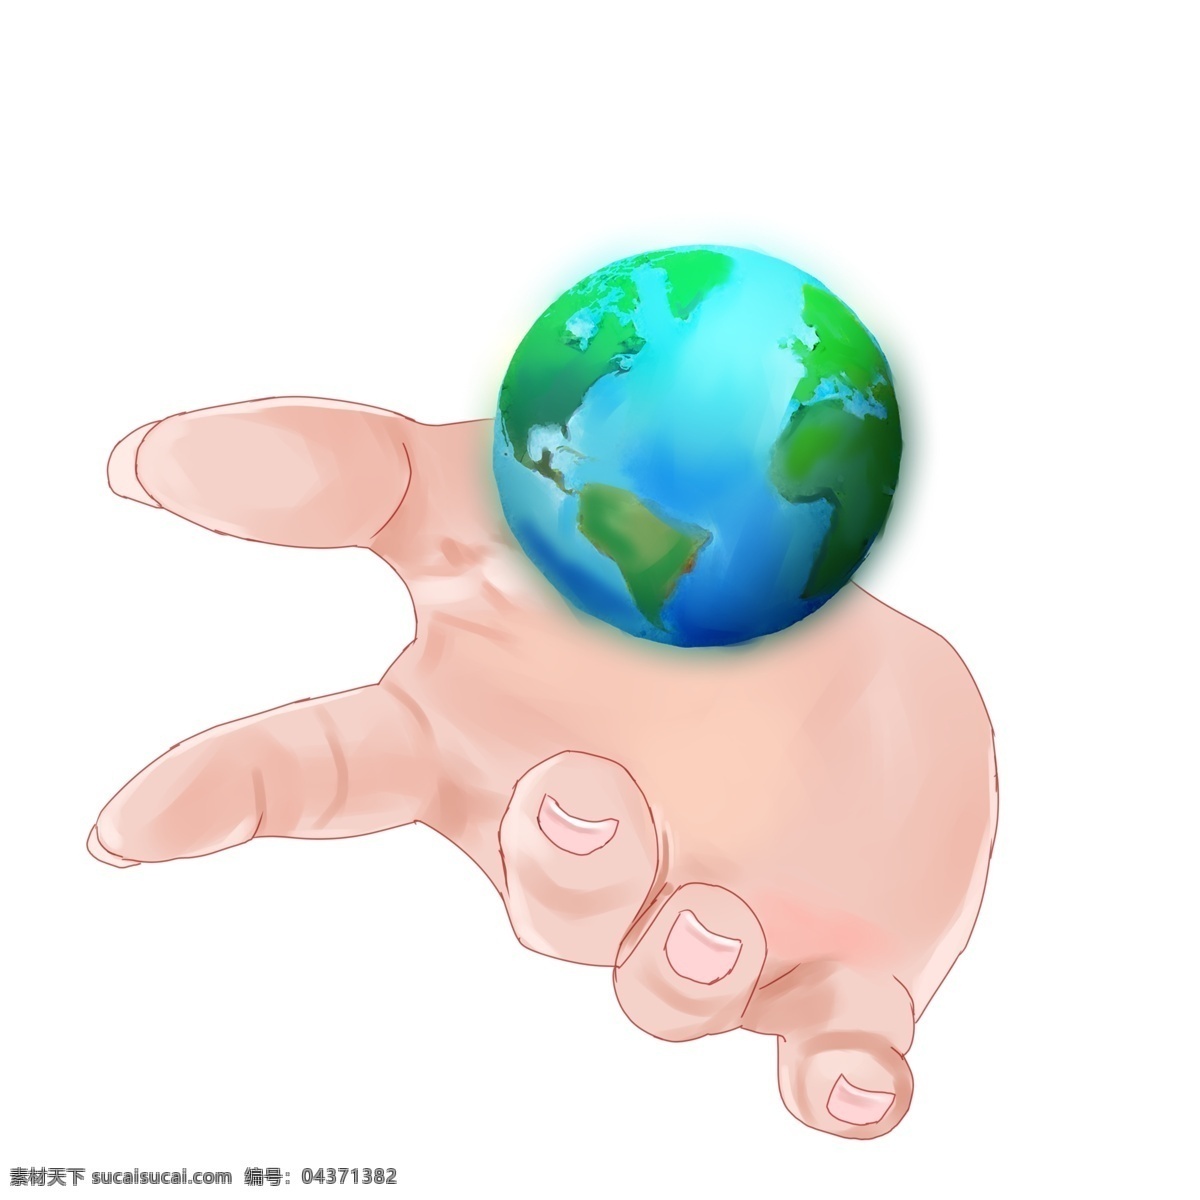 手 托 地球 创意 插图 手部动作 手掌 保护环境 爱护地球 呼吁 手部阴影 手掌张开 创意插图 手托地球